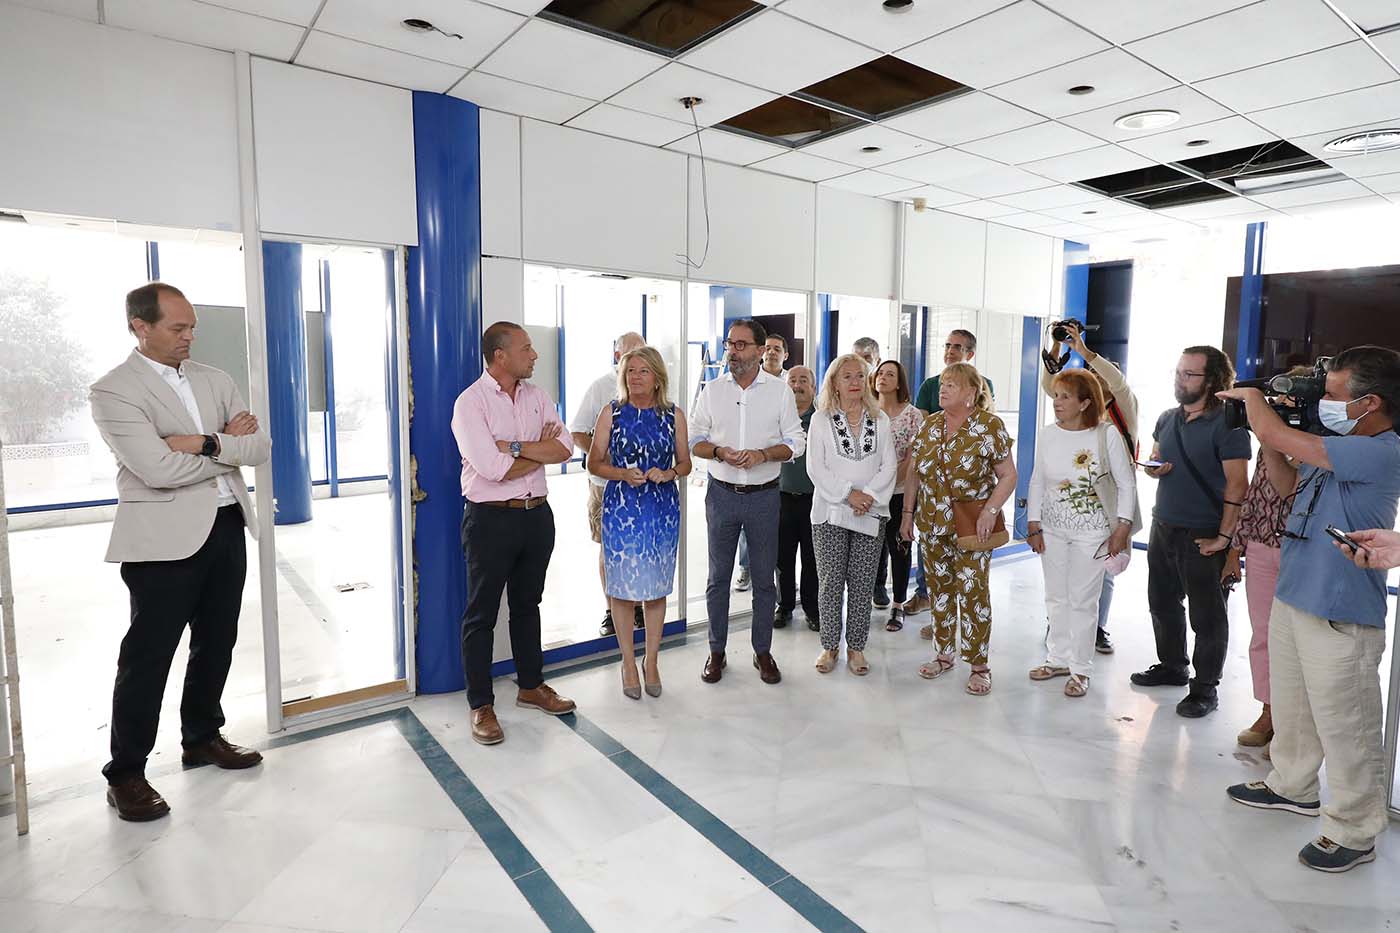 El Ayuntamiento inicia las obras de acondicionamiento para albergar el nuevo centro de salud de Ricardo Soriano, que pondrán al servicio de la ciudadanía un equipamiento asistencial “referente, puntero y moderno”